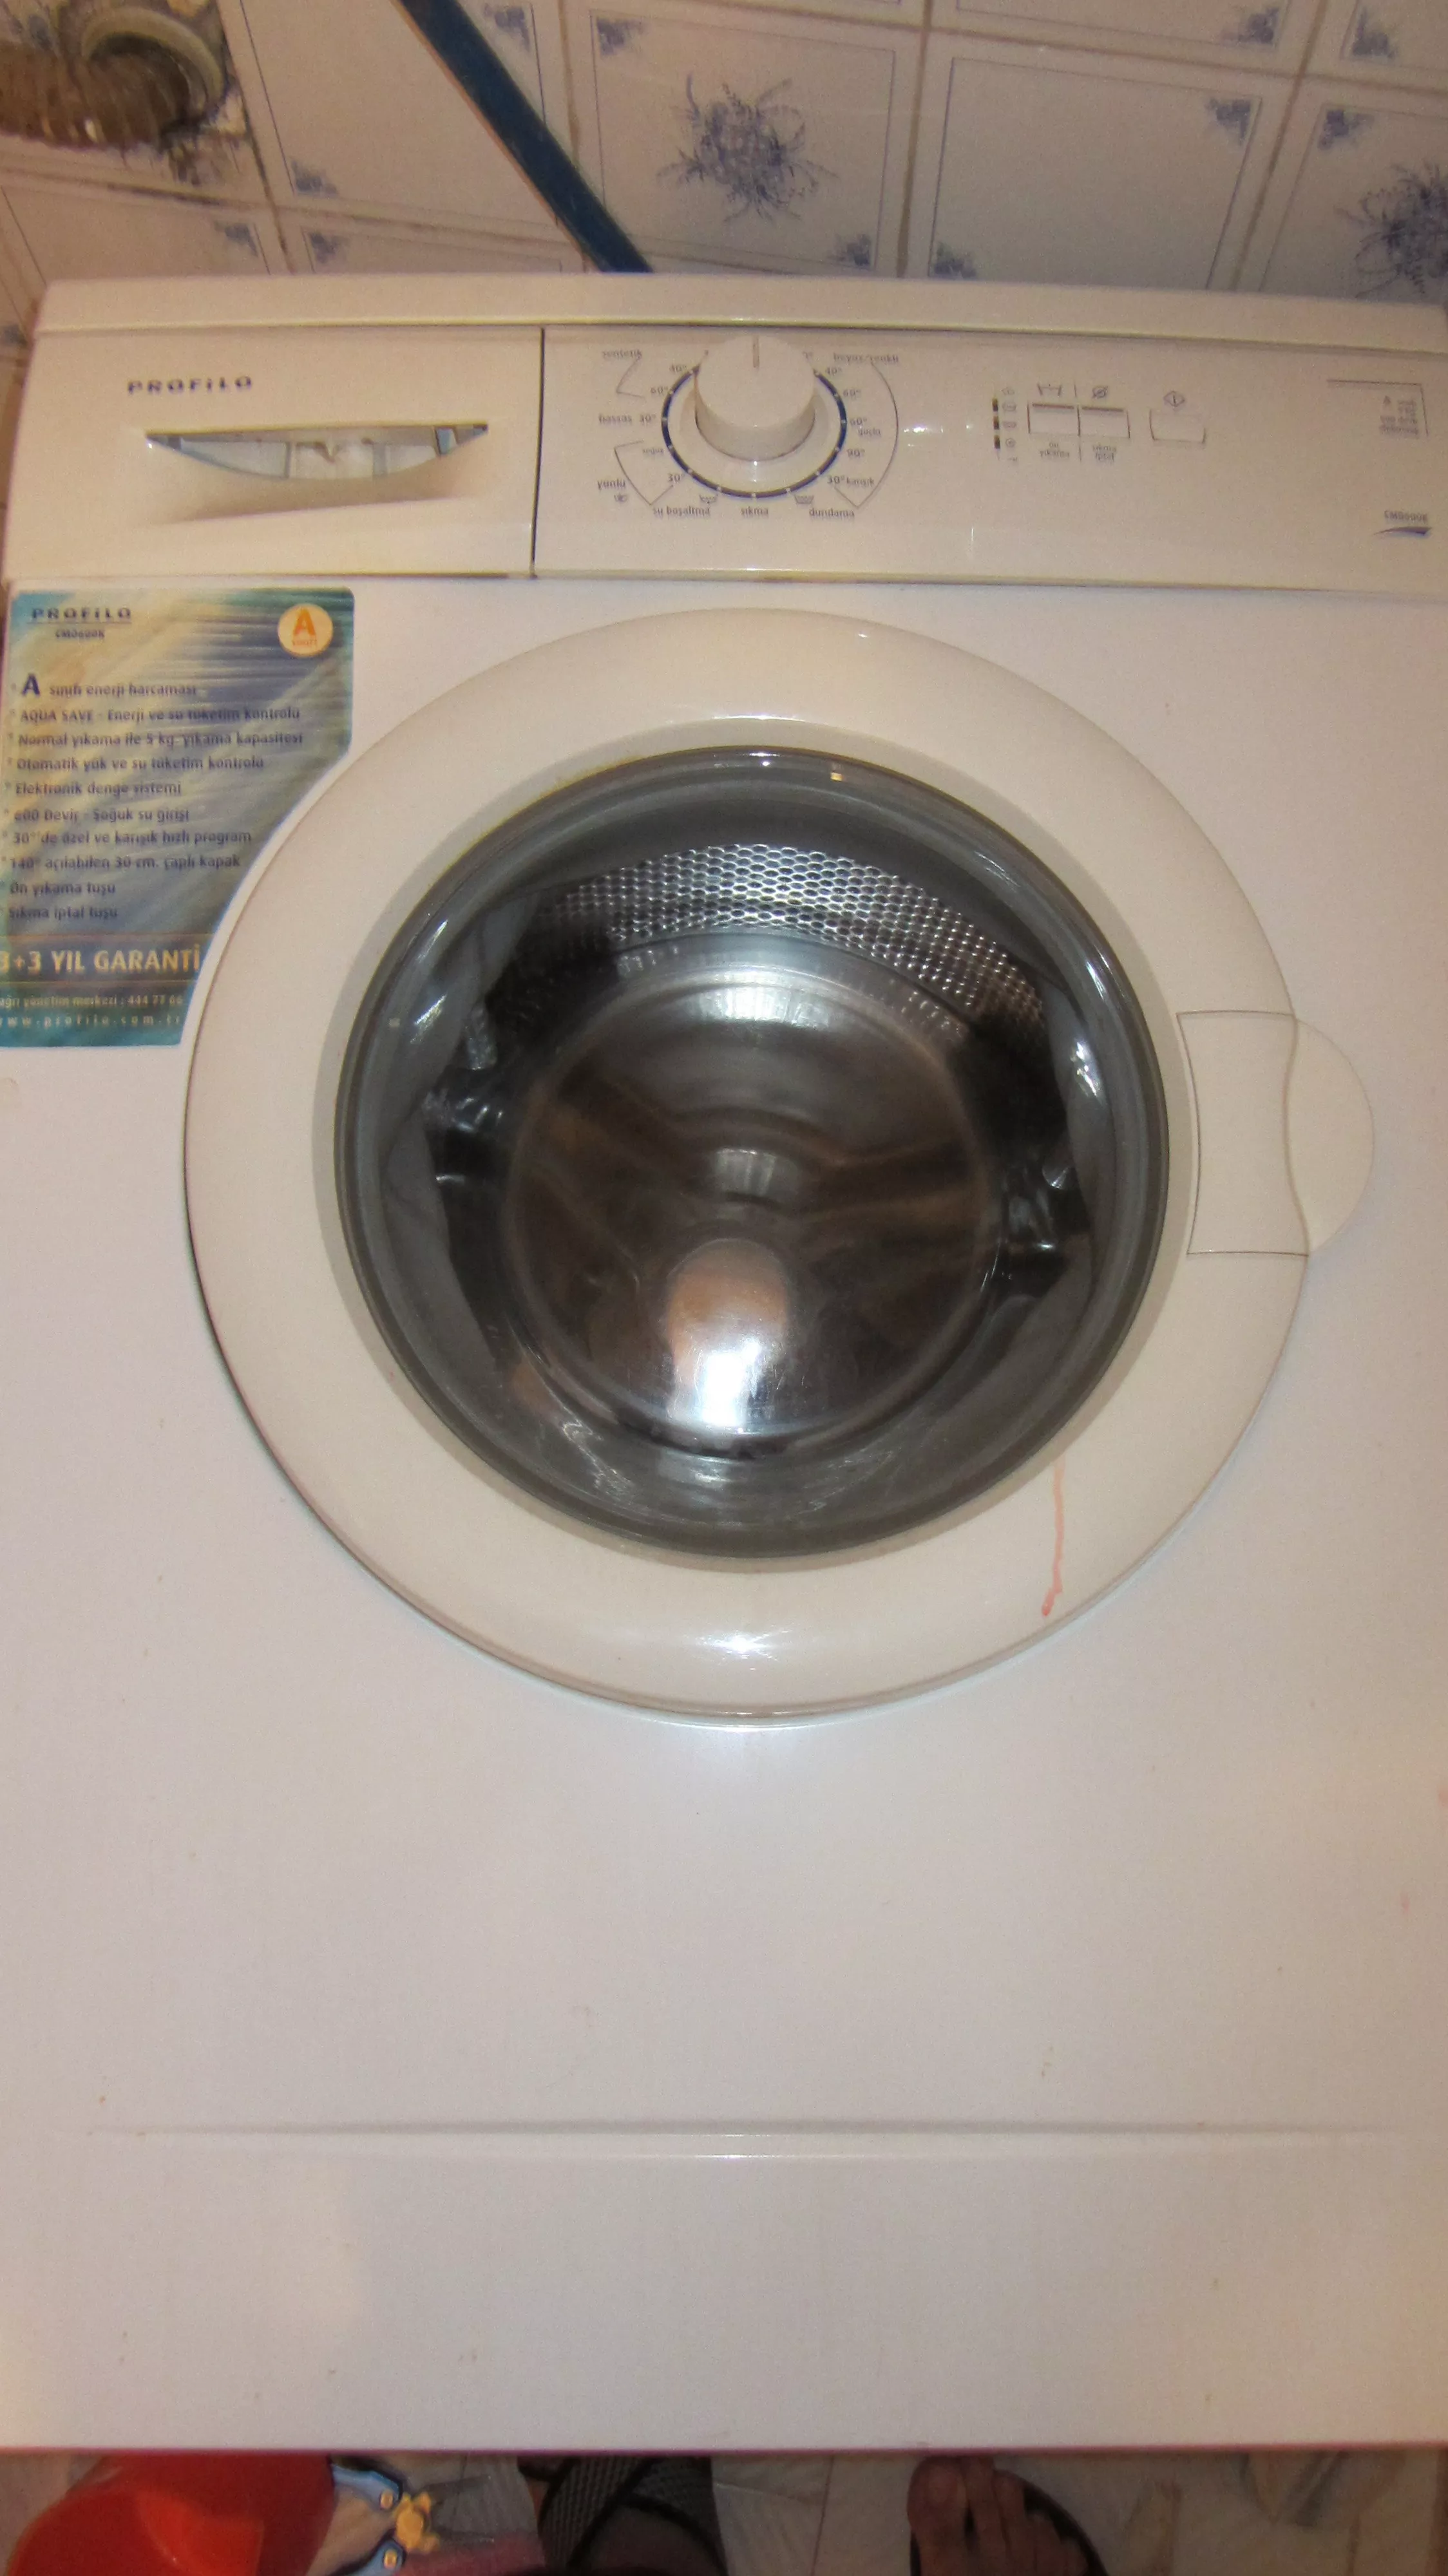  Profilo CM0600K çamaşır makinesi suyu boşaltmıyor ! ÖĞRENCİ EVİ !